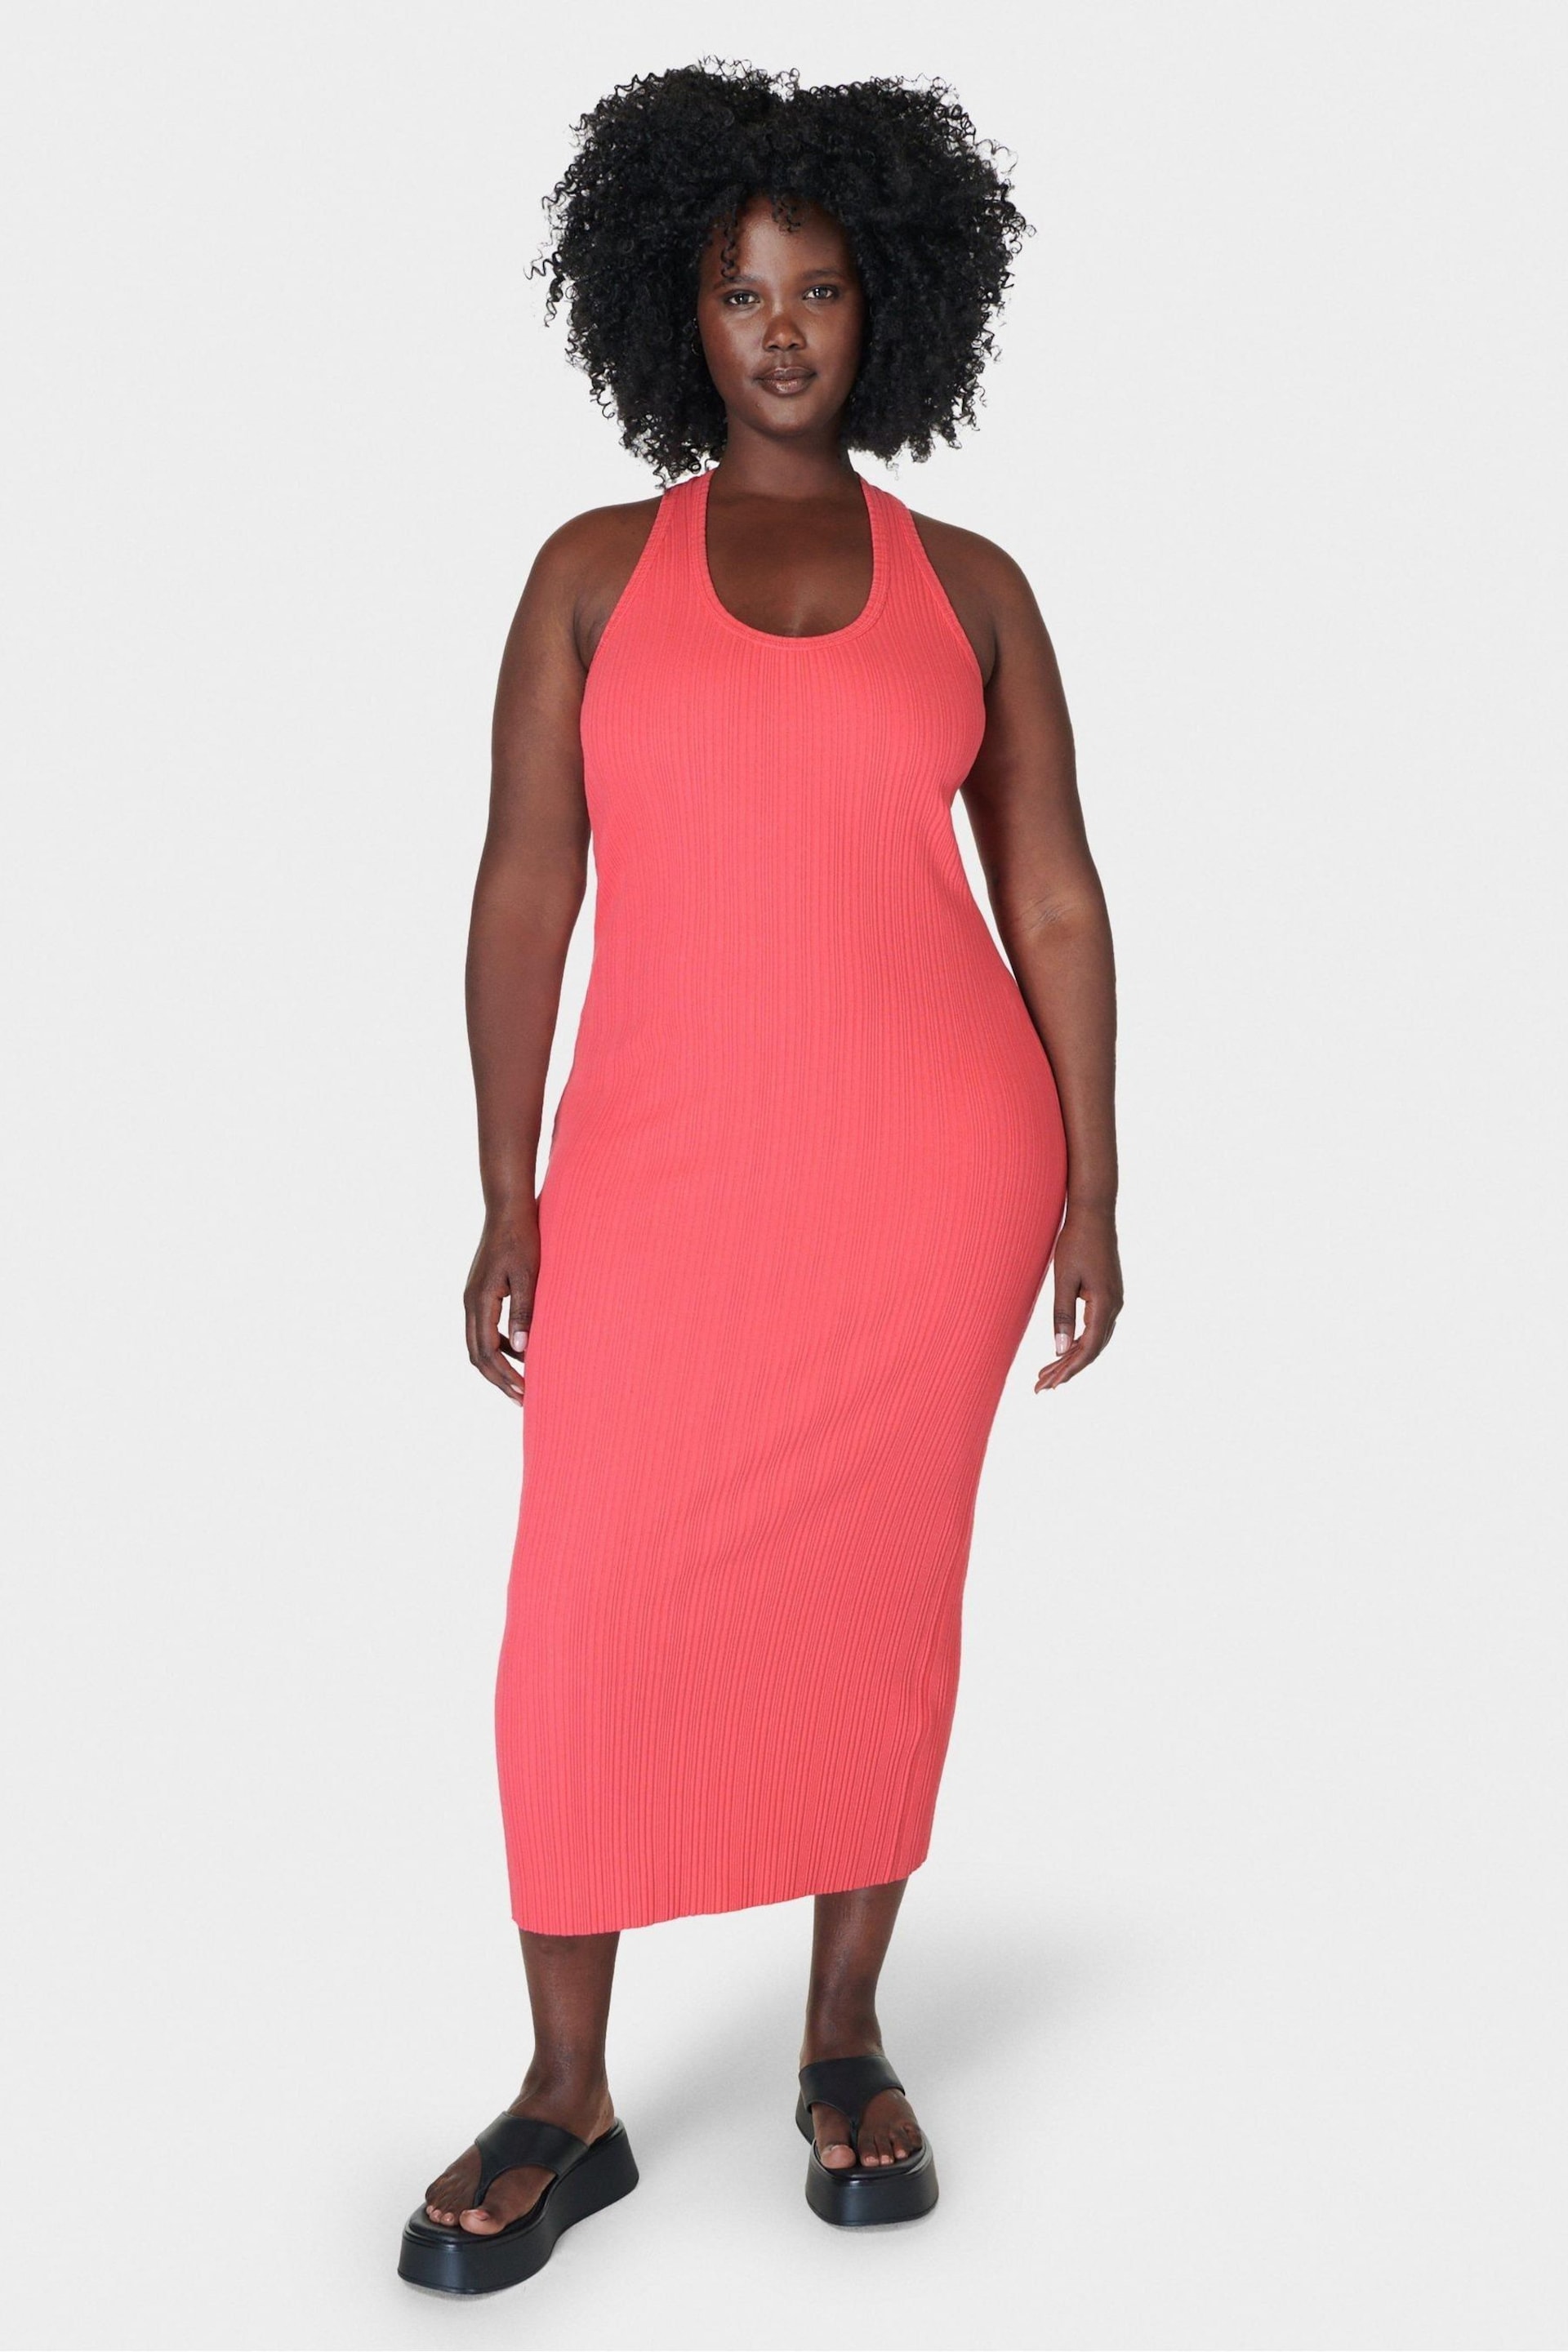 Sweaty Betty Coral Pink Resort Rib Tank Dress - Image 3 of 6